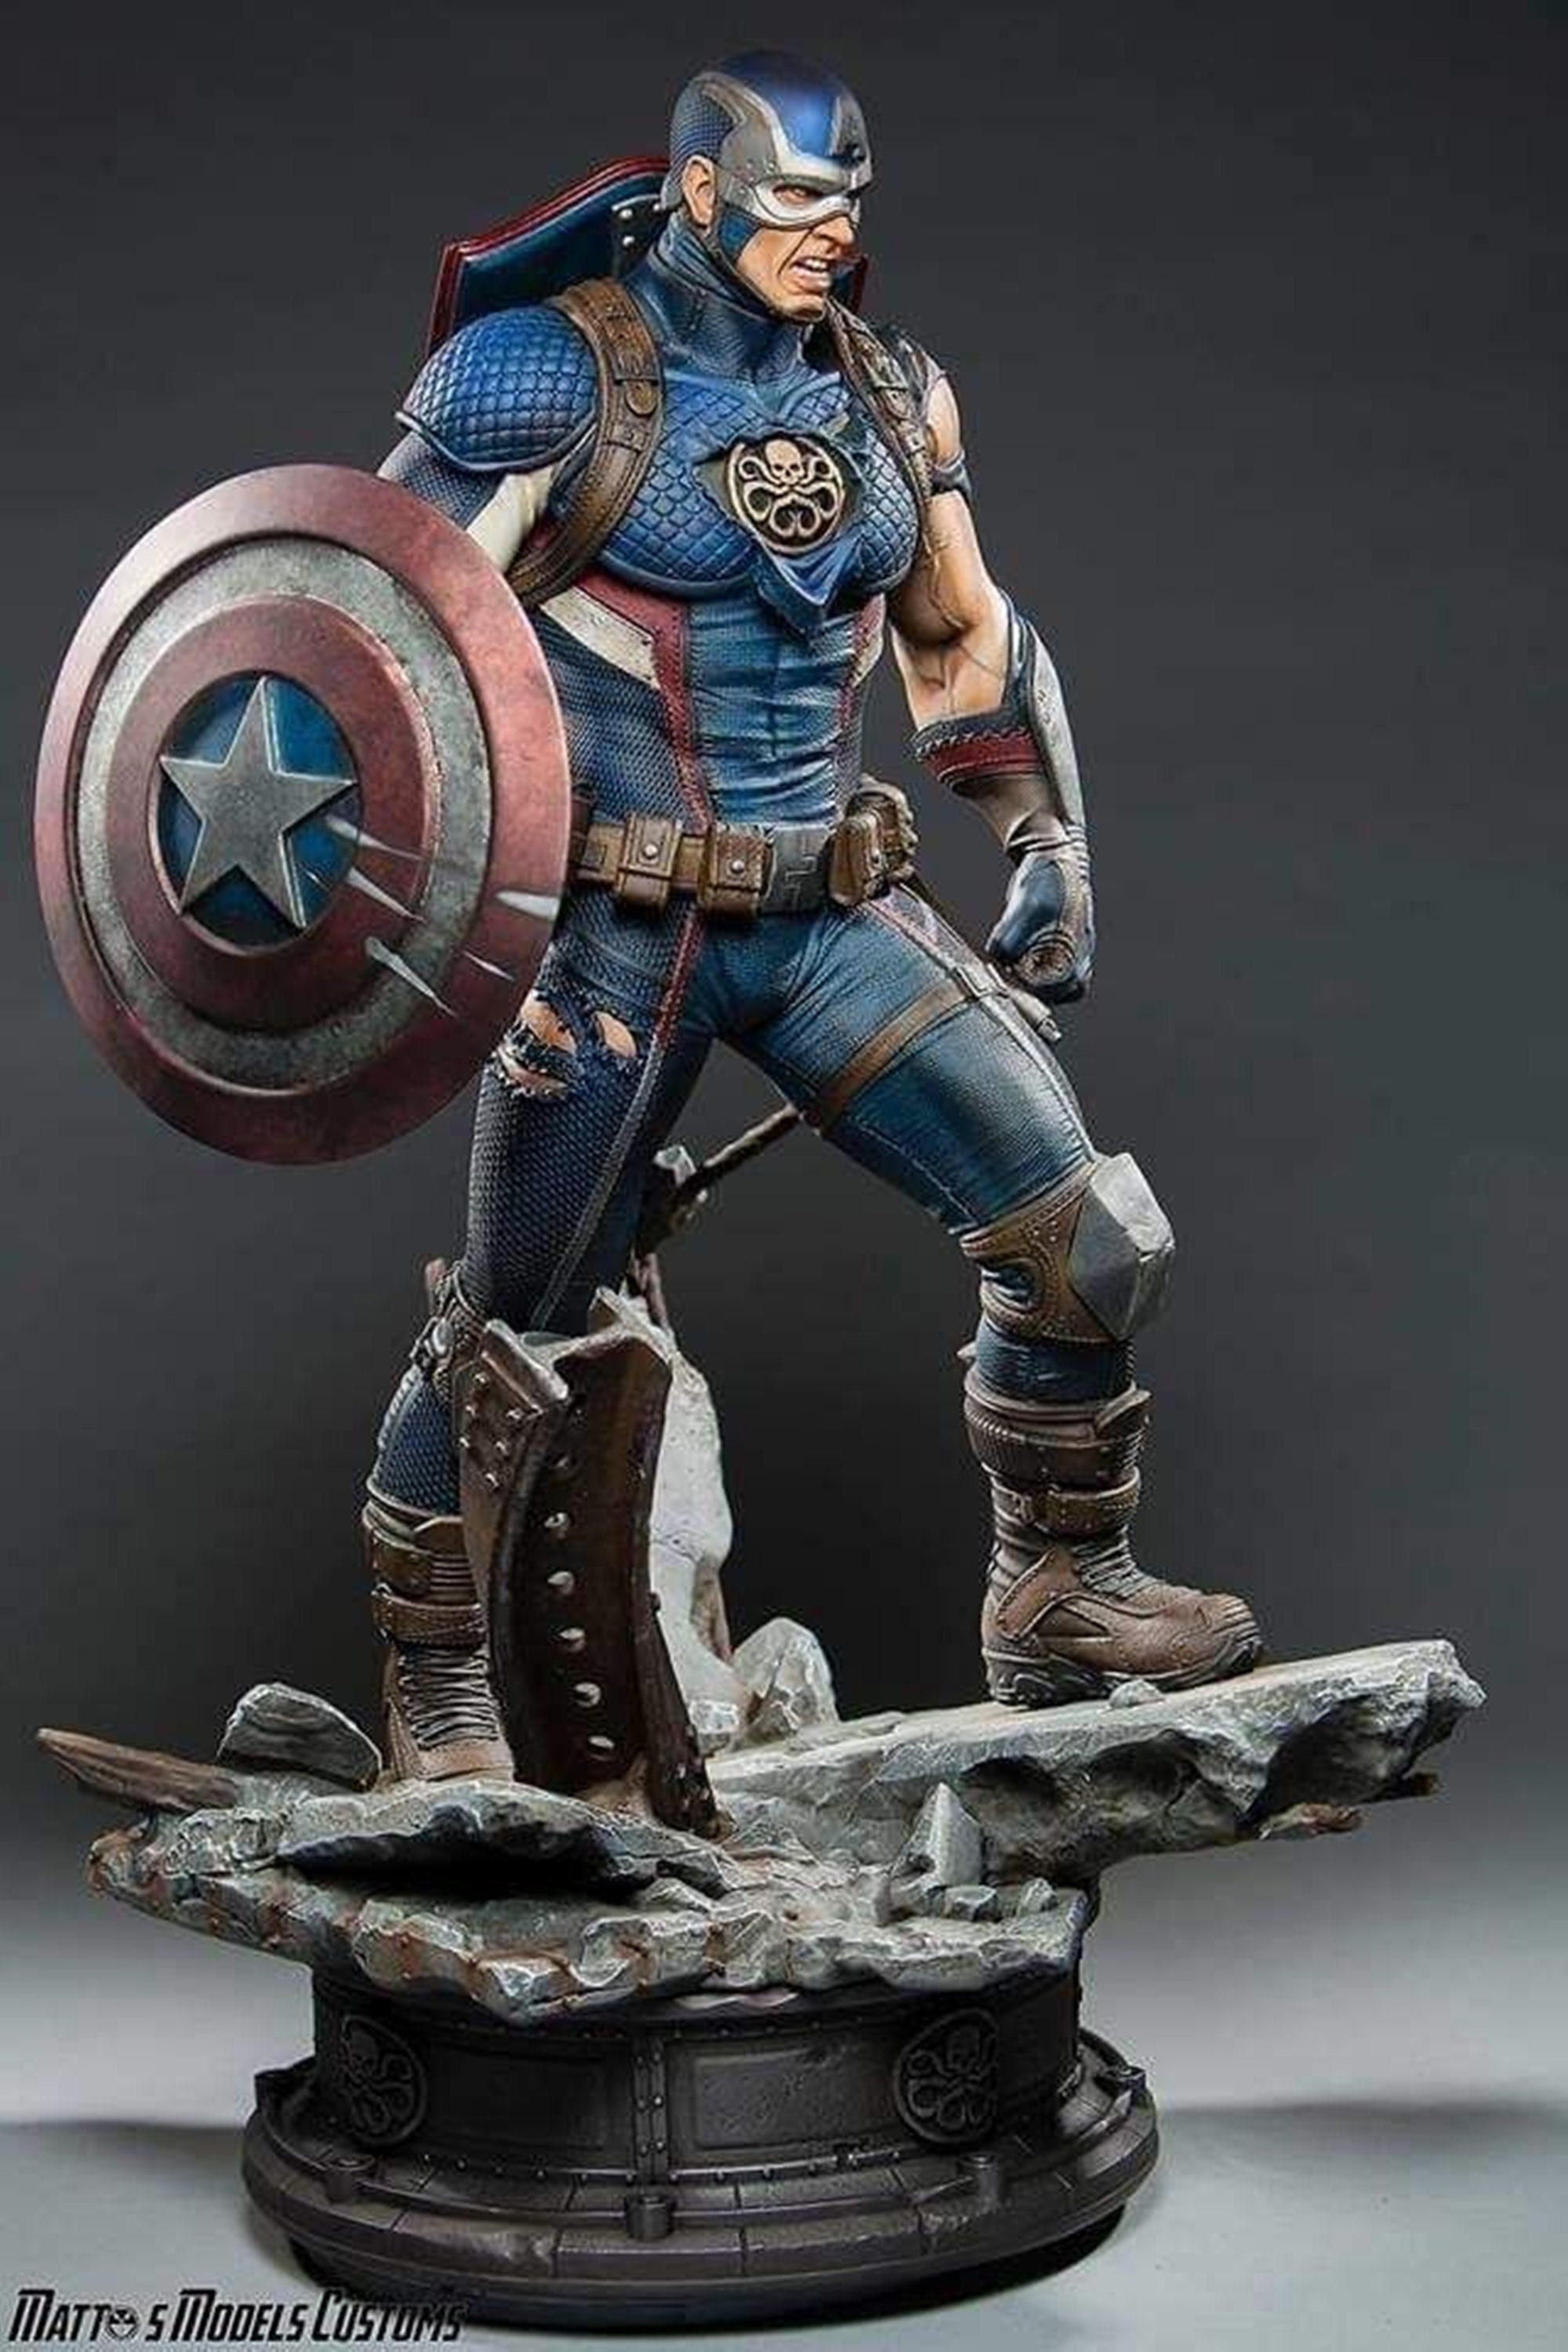 45cm Marvel Avengers Jouet Super Héros Captain America Bouclier Peluche  Oreiller Peluche Jouet